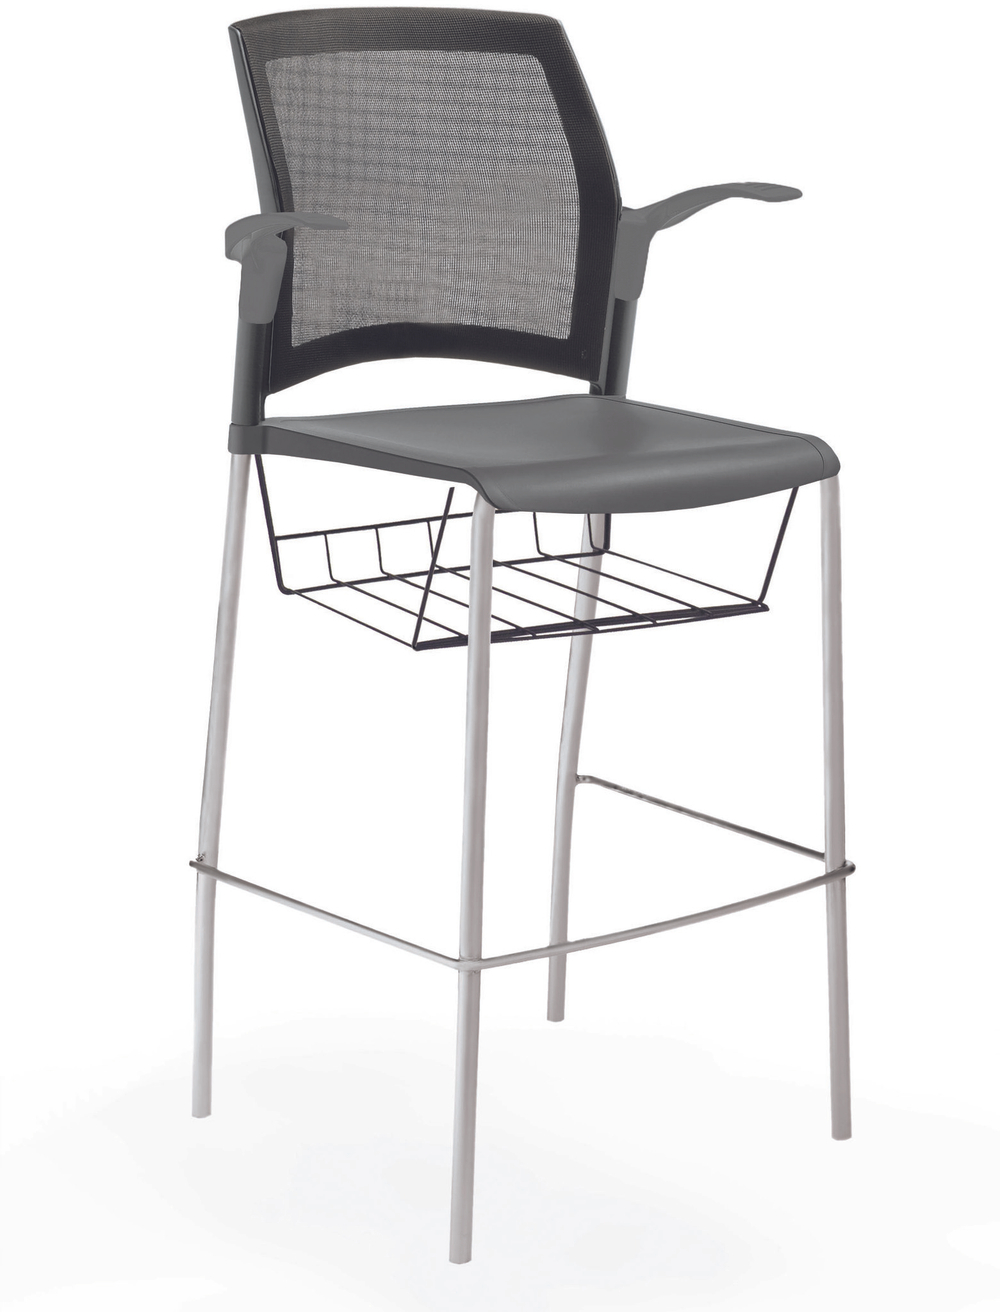 стул Rewind стул барный на 4 ногах, каркас серый, пластик серый, спинка-сетка, с открытыми подлокотниками, с подседельной корзиной